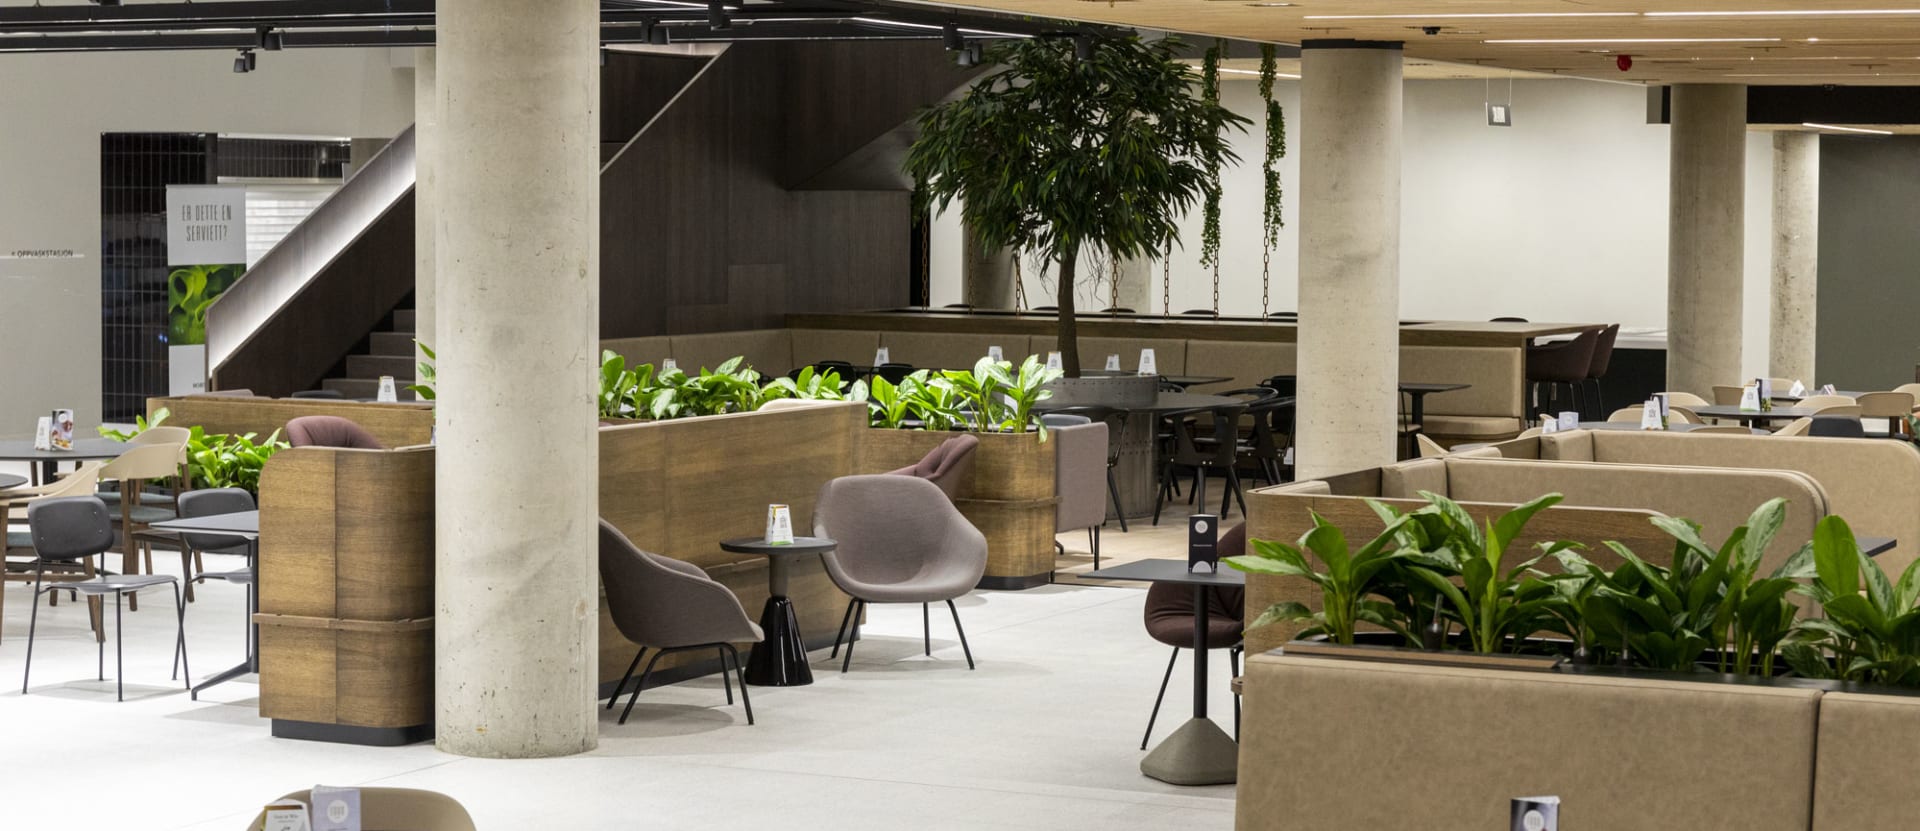 Første etasje i Oslo K blir et samlingssted, tilrettelagt for samarbeid. Her fra bedriftsrestauranten. 